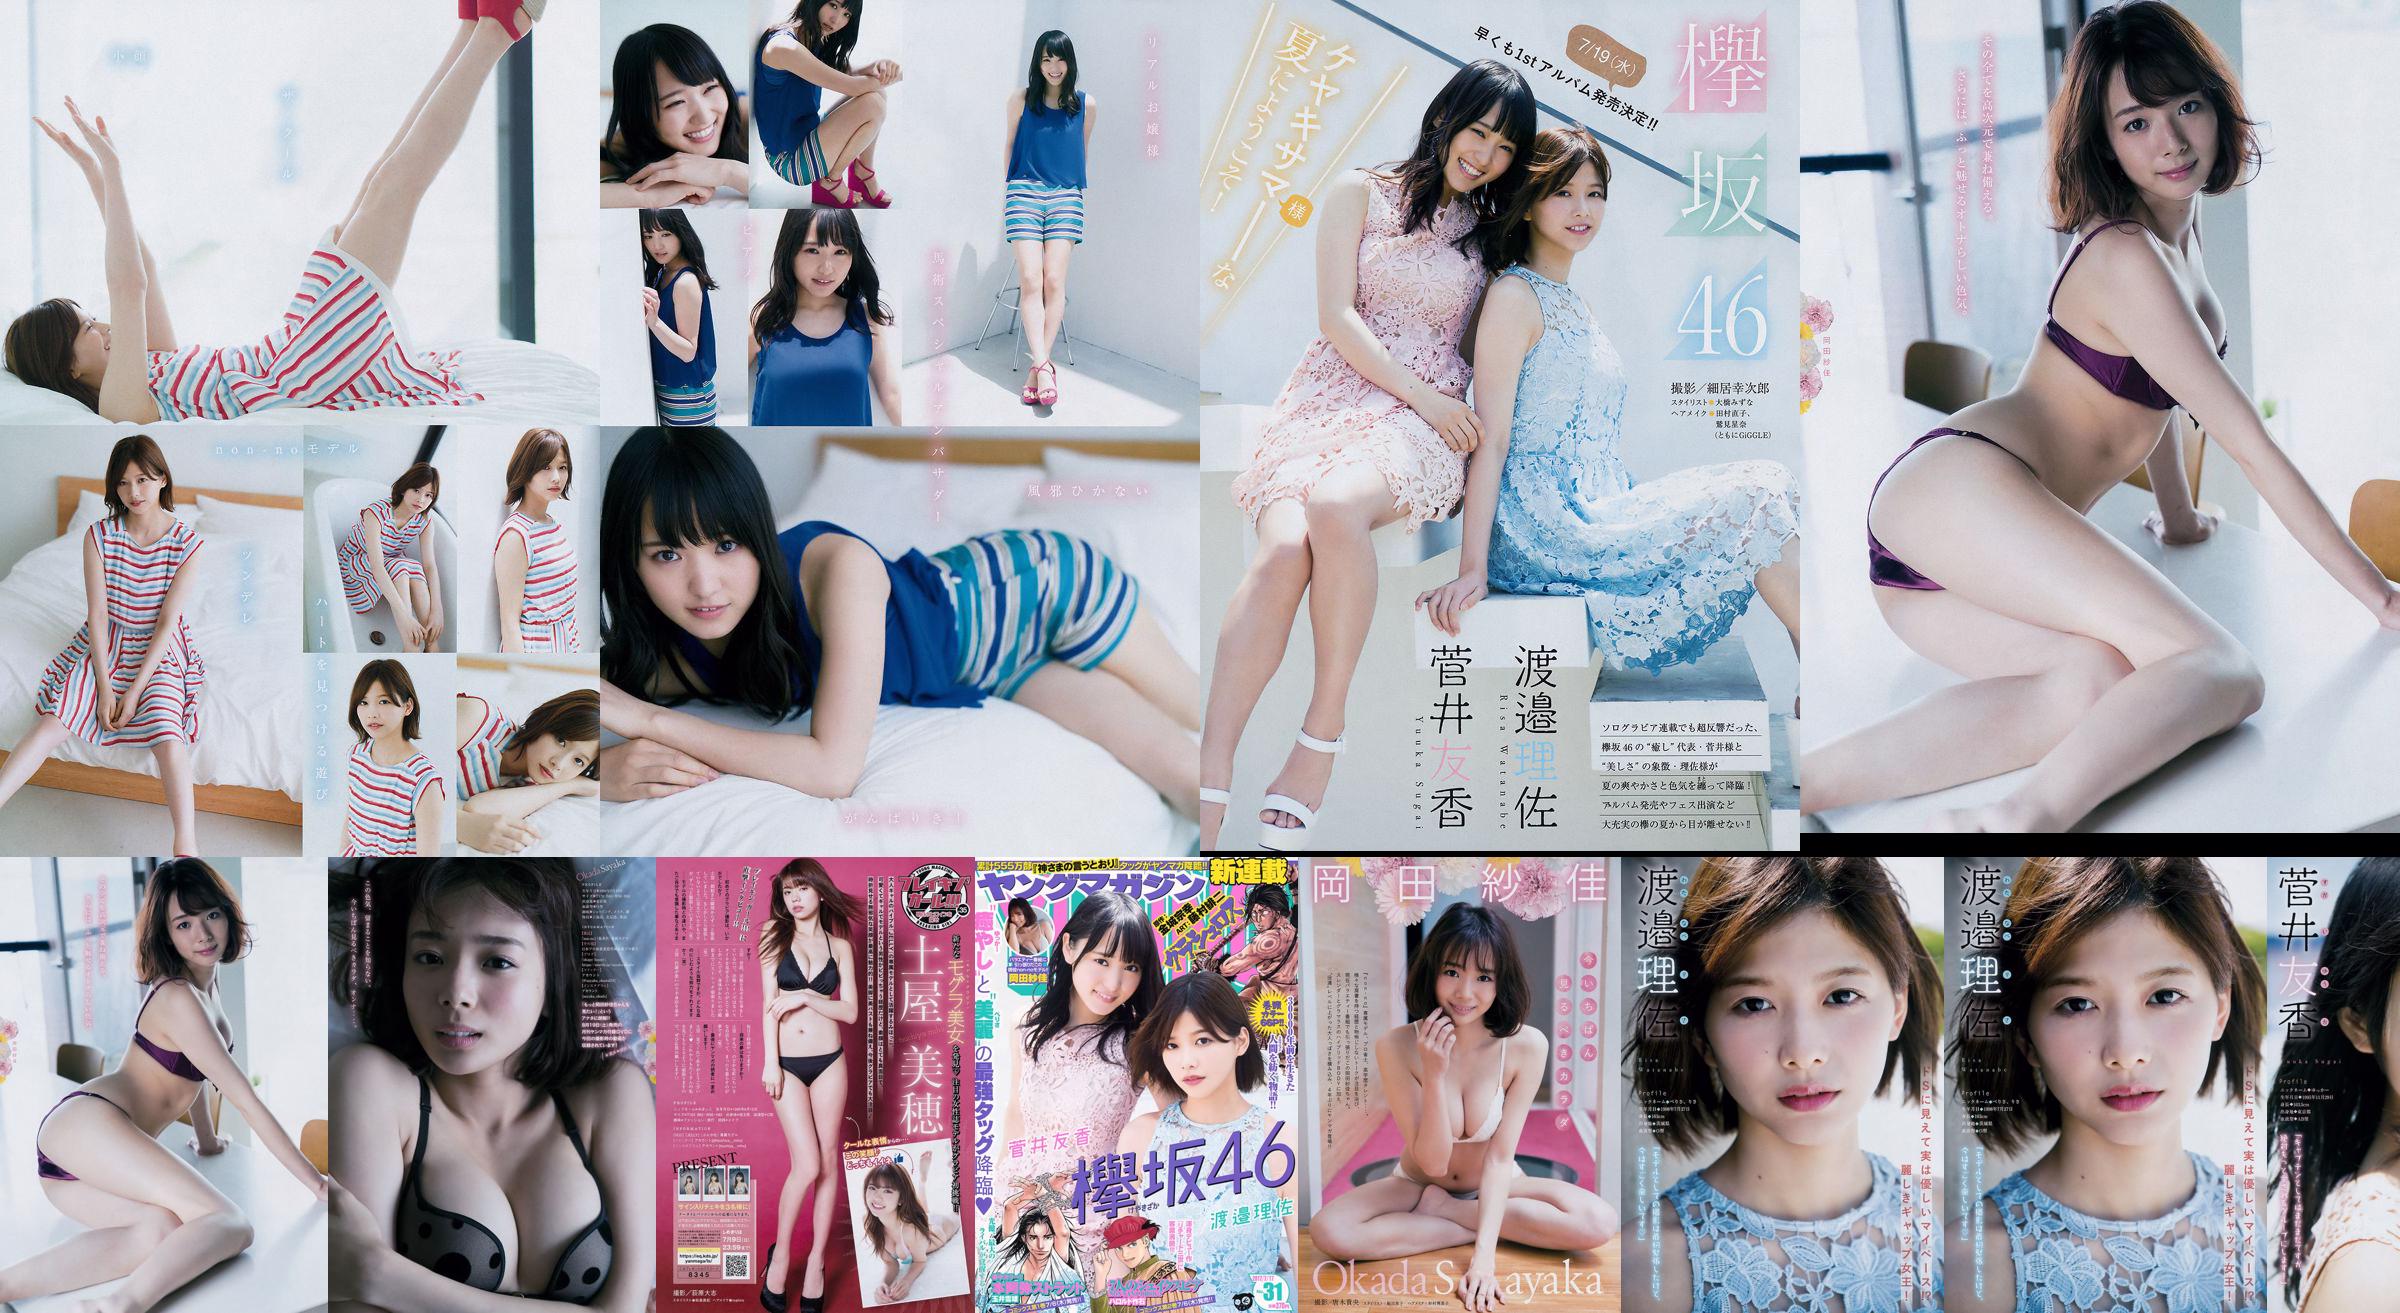 [Young Magazine] Watanabe Risa, Sugai Yuka, Okada Saika 2017 No.31 Photo Magazine No.18c7bd Page 1